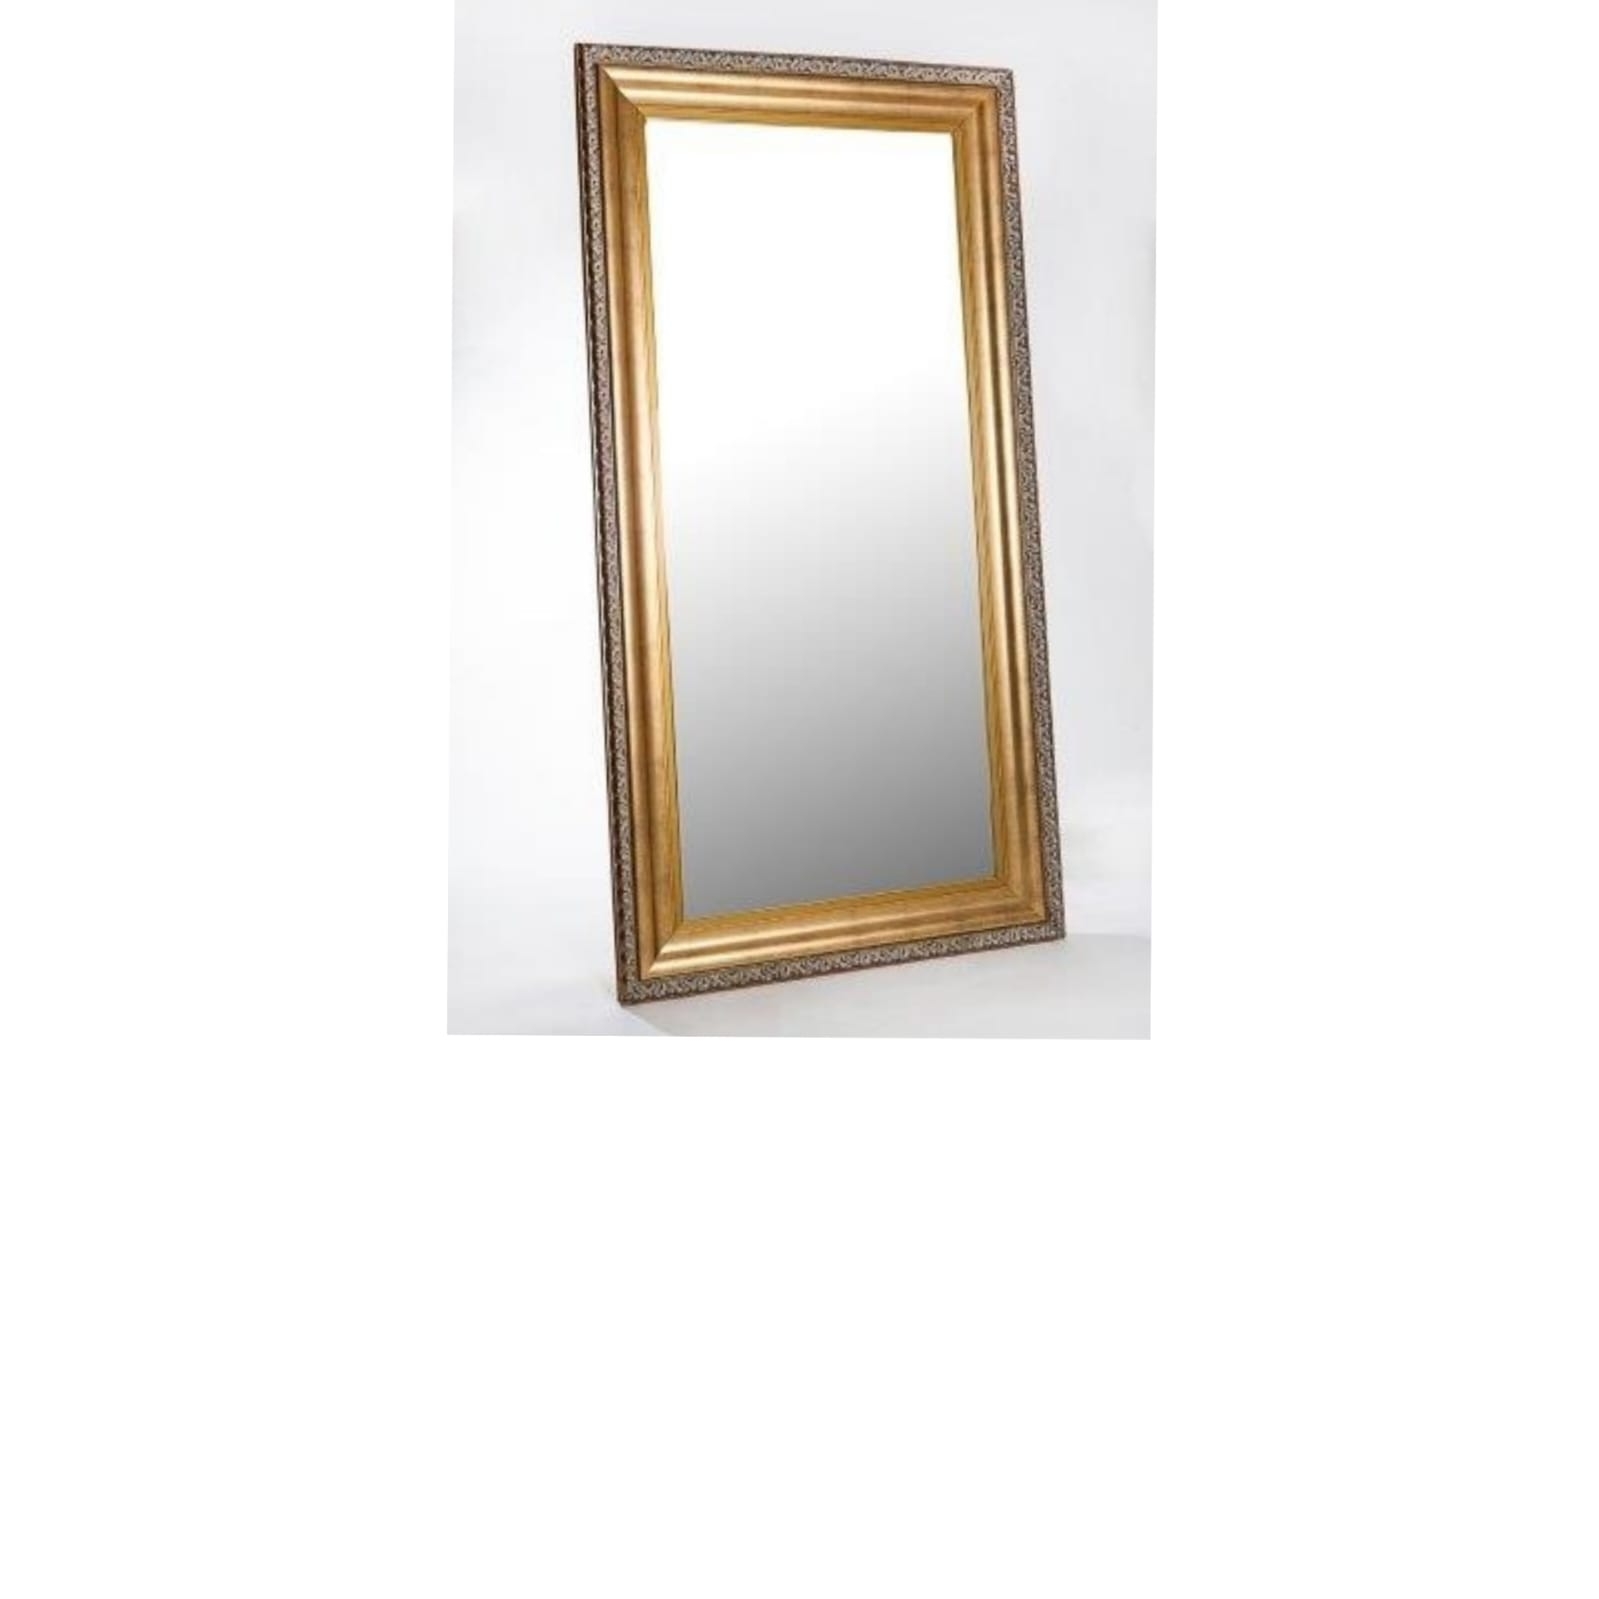 REF 4466 - Espelho Moldura Dourada 2,20 X 1,10 Cm